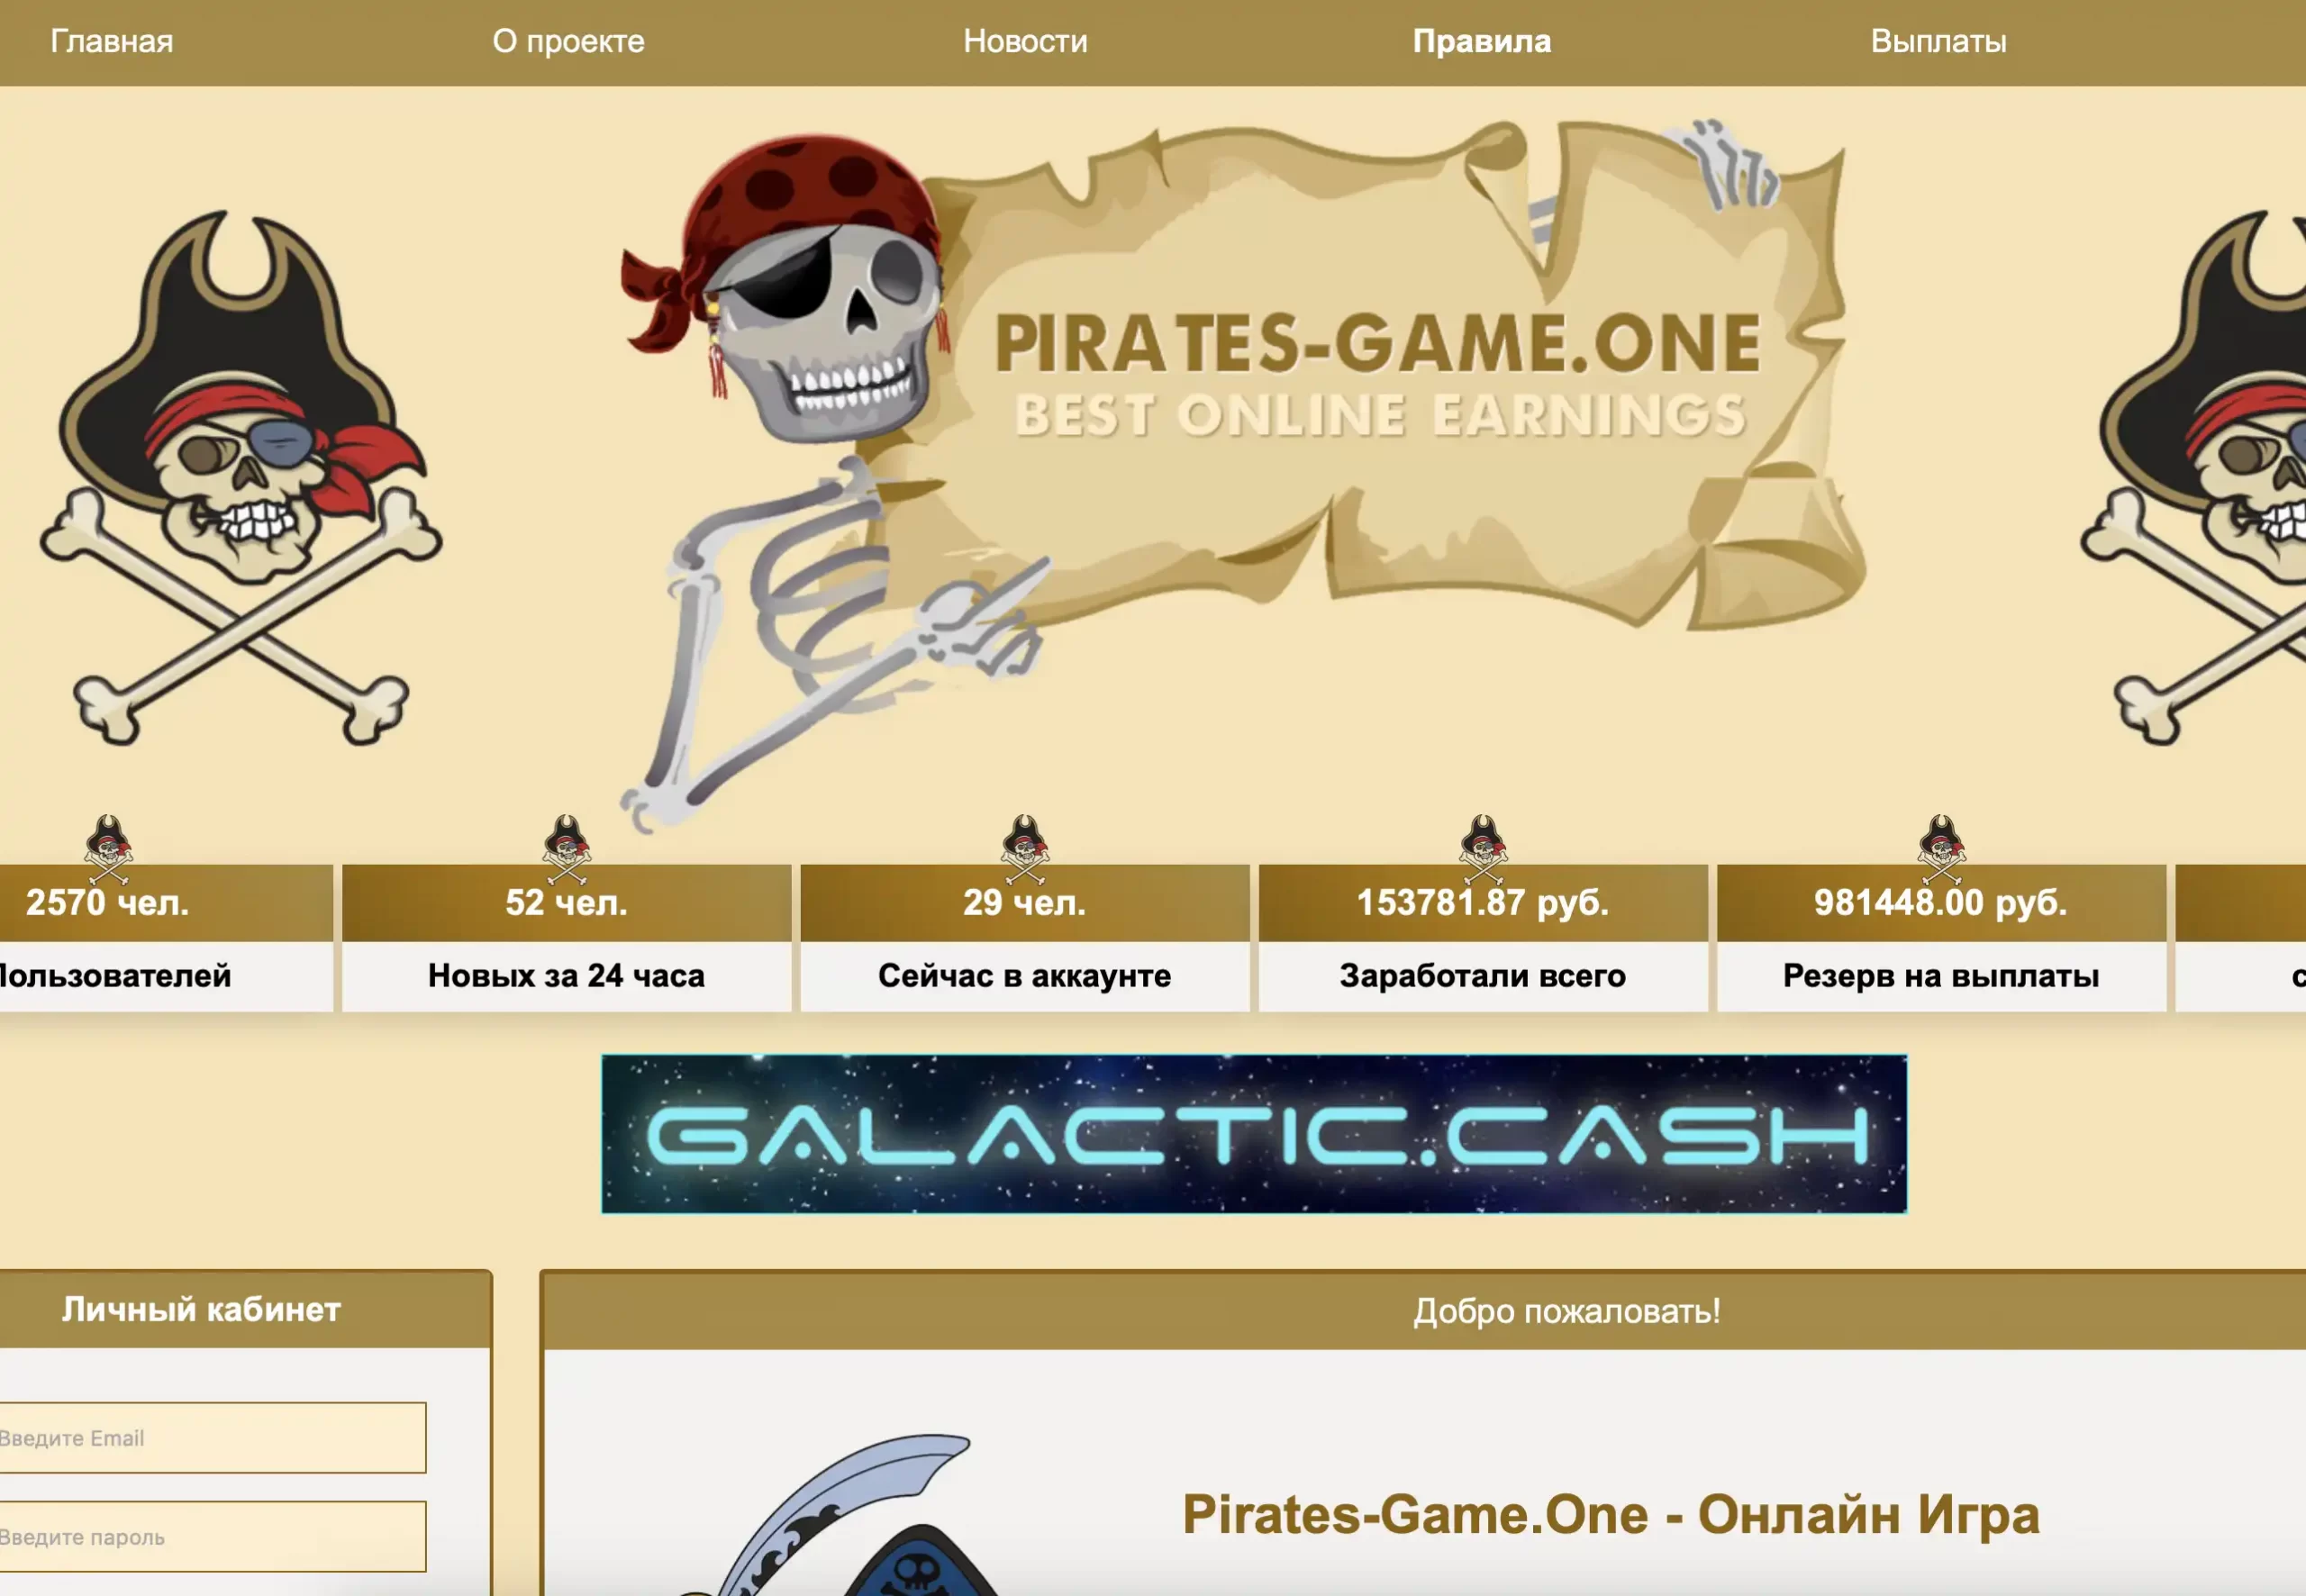 Pirates Game - фальшивый проект! Честный обзор и отзывы